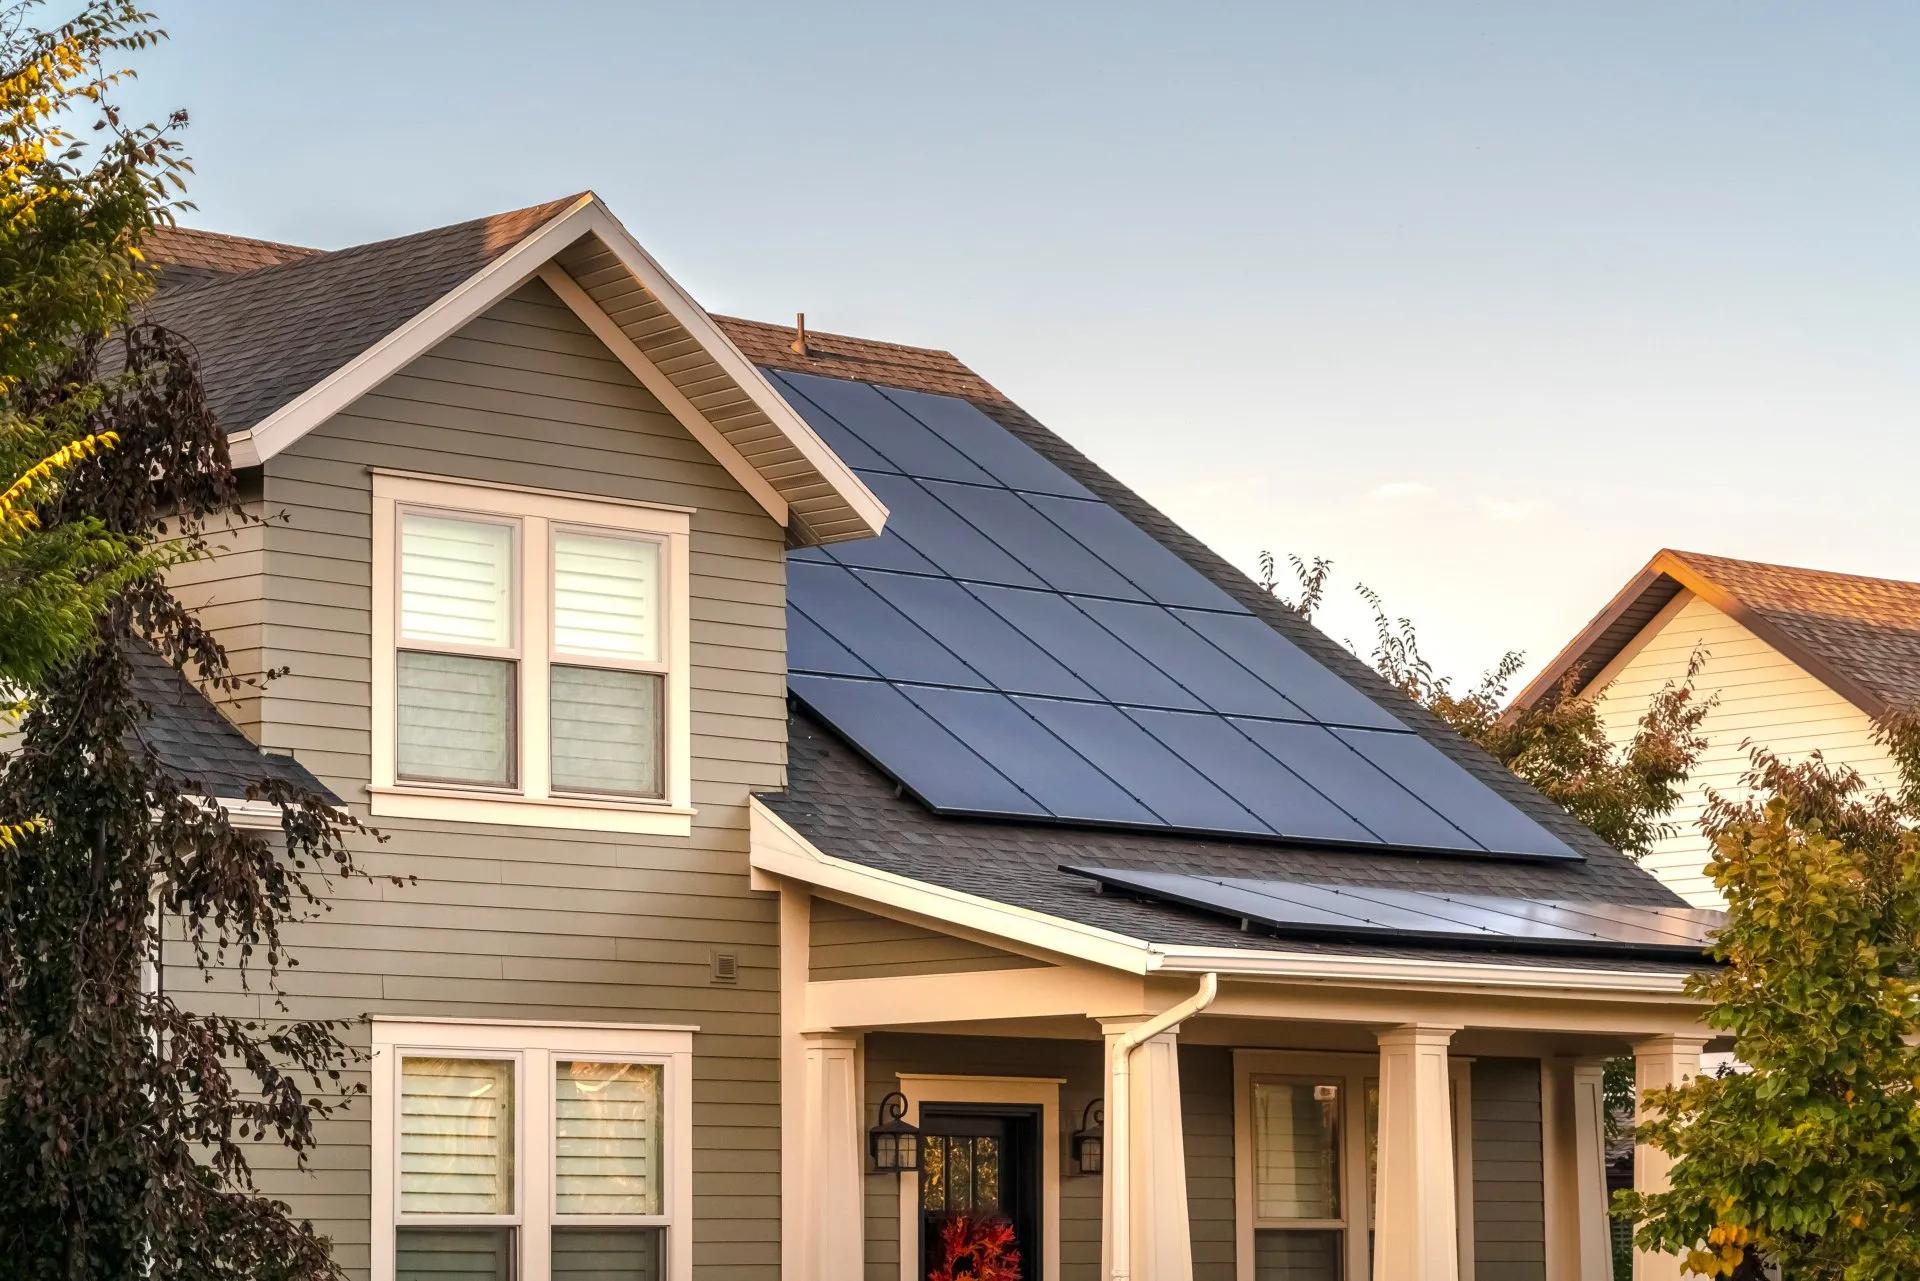 do solar panels increase home value - Do solar panels increase home value in Canada